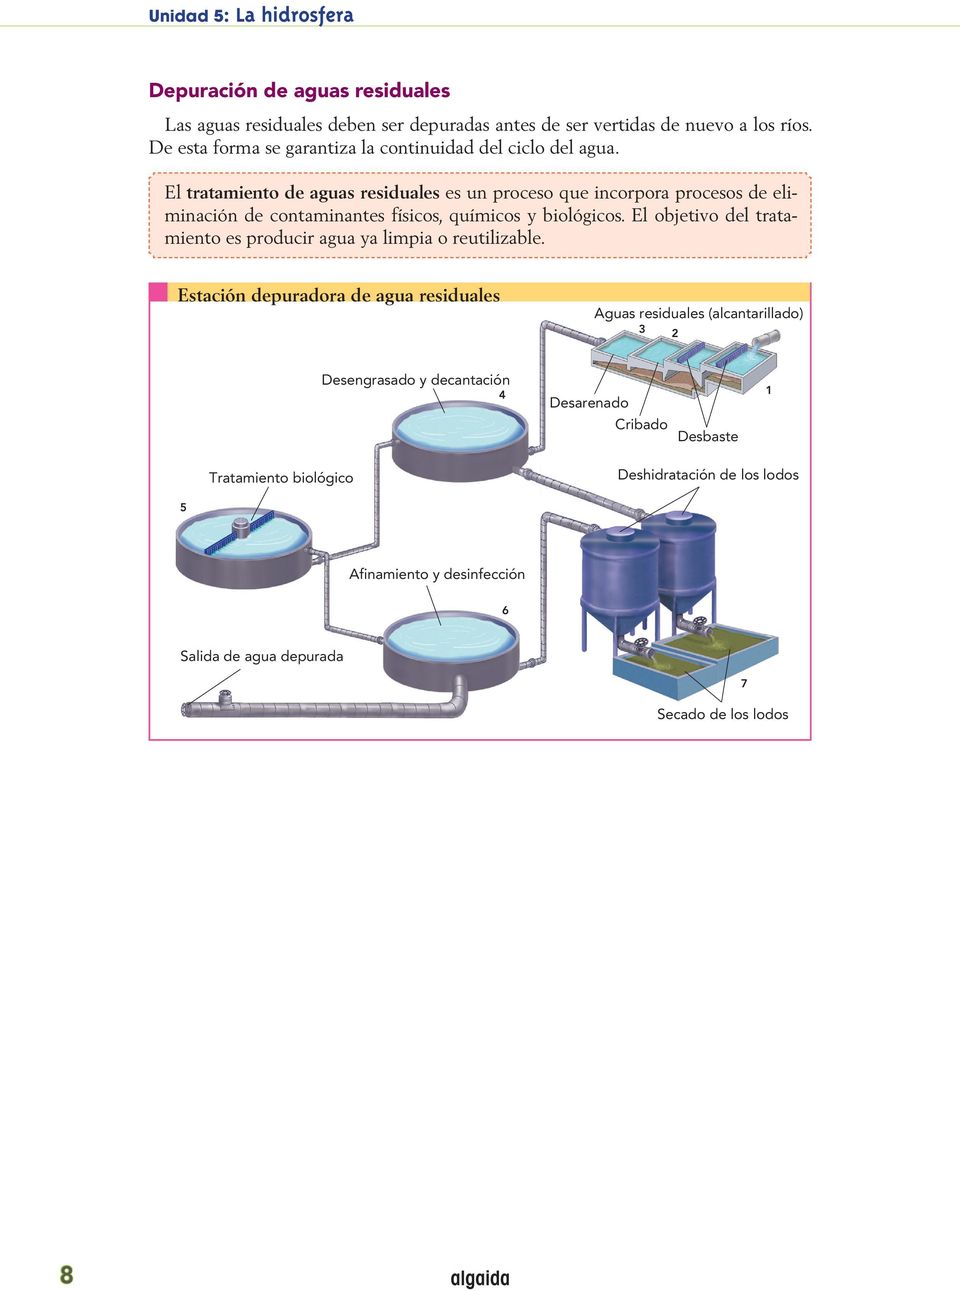 El tratamiento de aguas residuales es un proceso que incorpora procesos de eliminación de contaminantes físicos, químicos y biológicos.